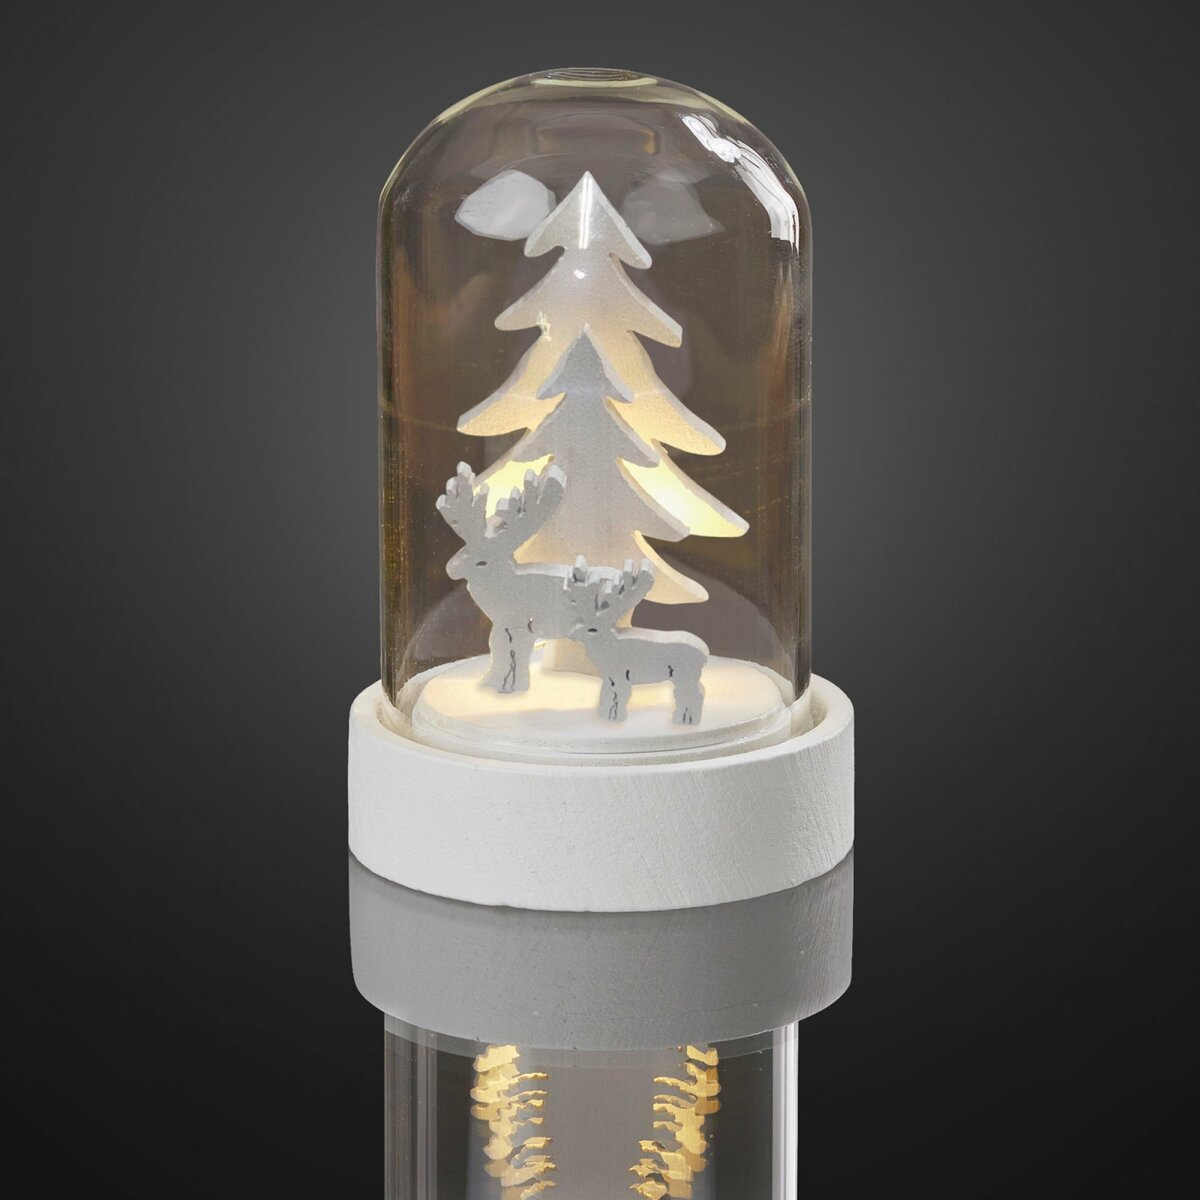 LED-Deko-Glocke mit Tannenbäumen und Rentieren, LEDs, batt warm-weiße